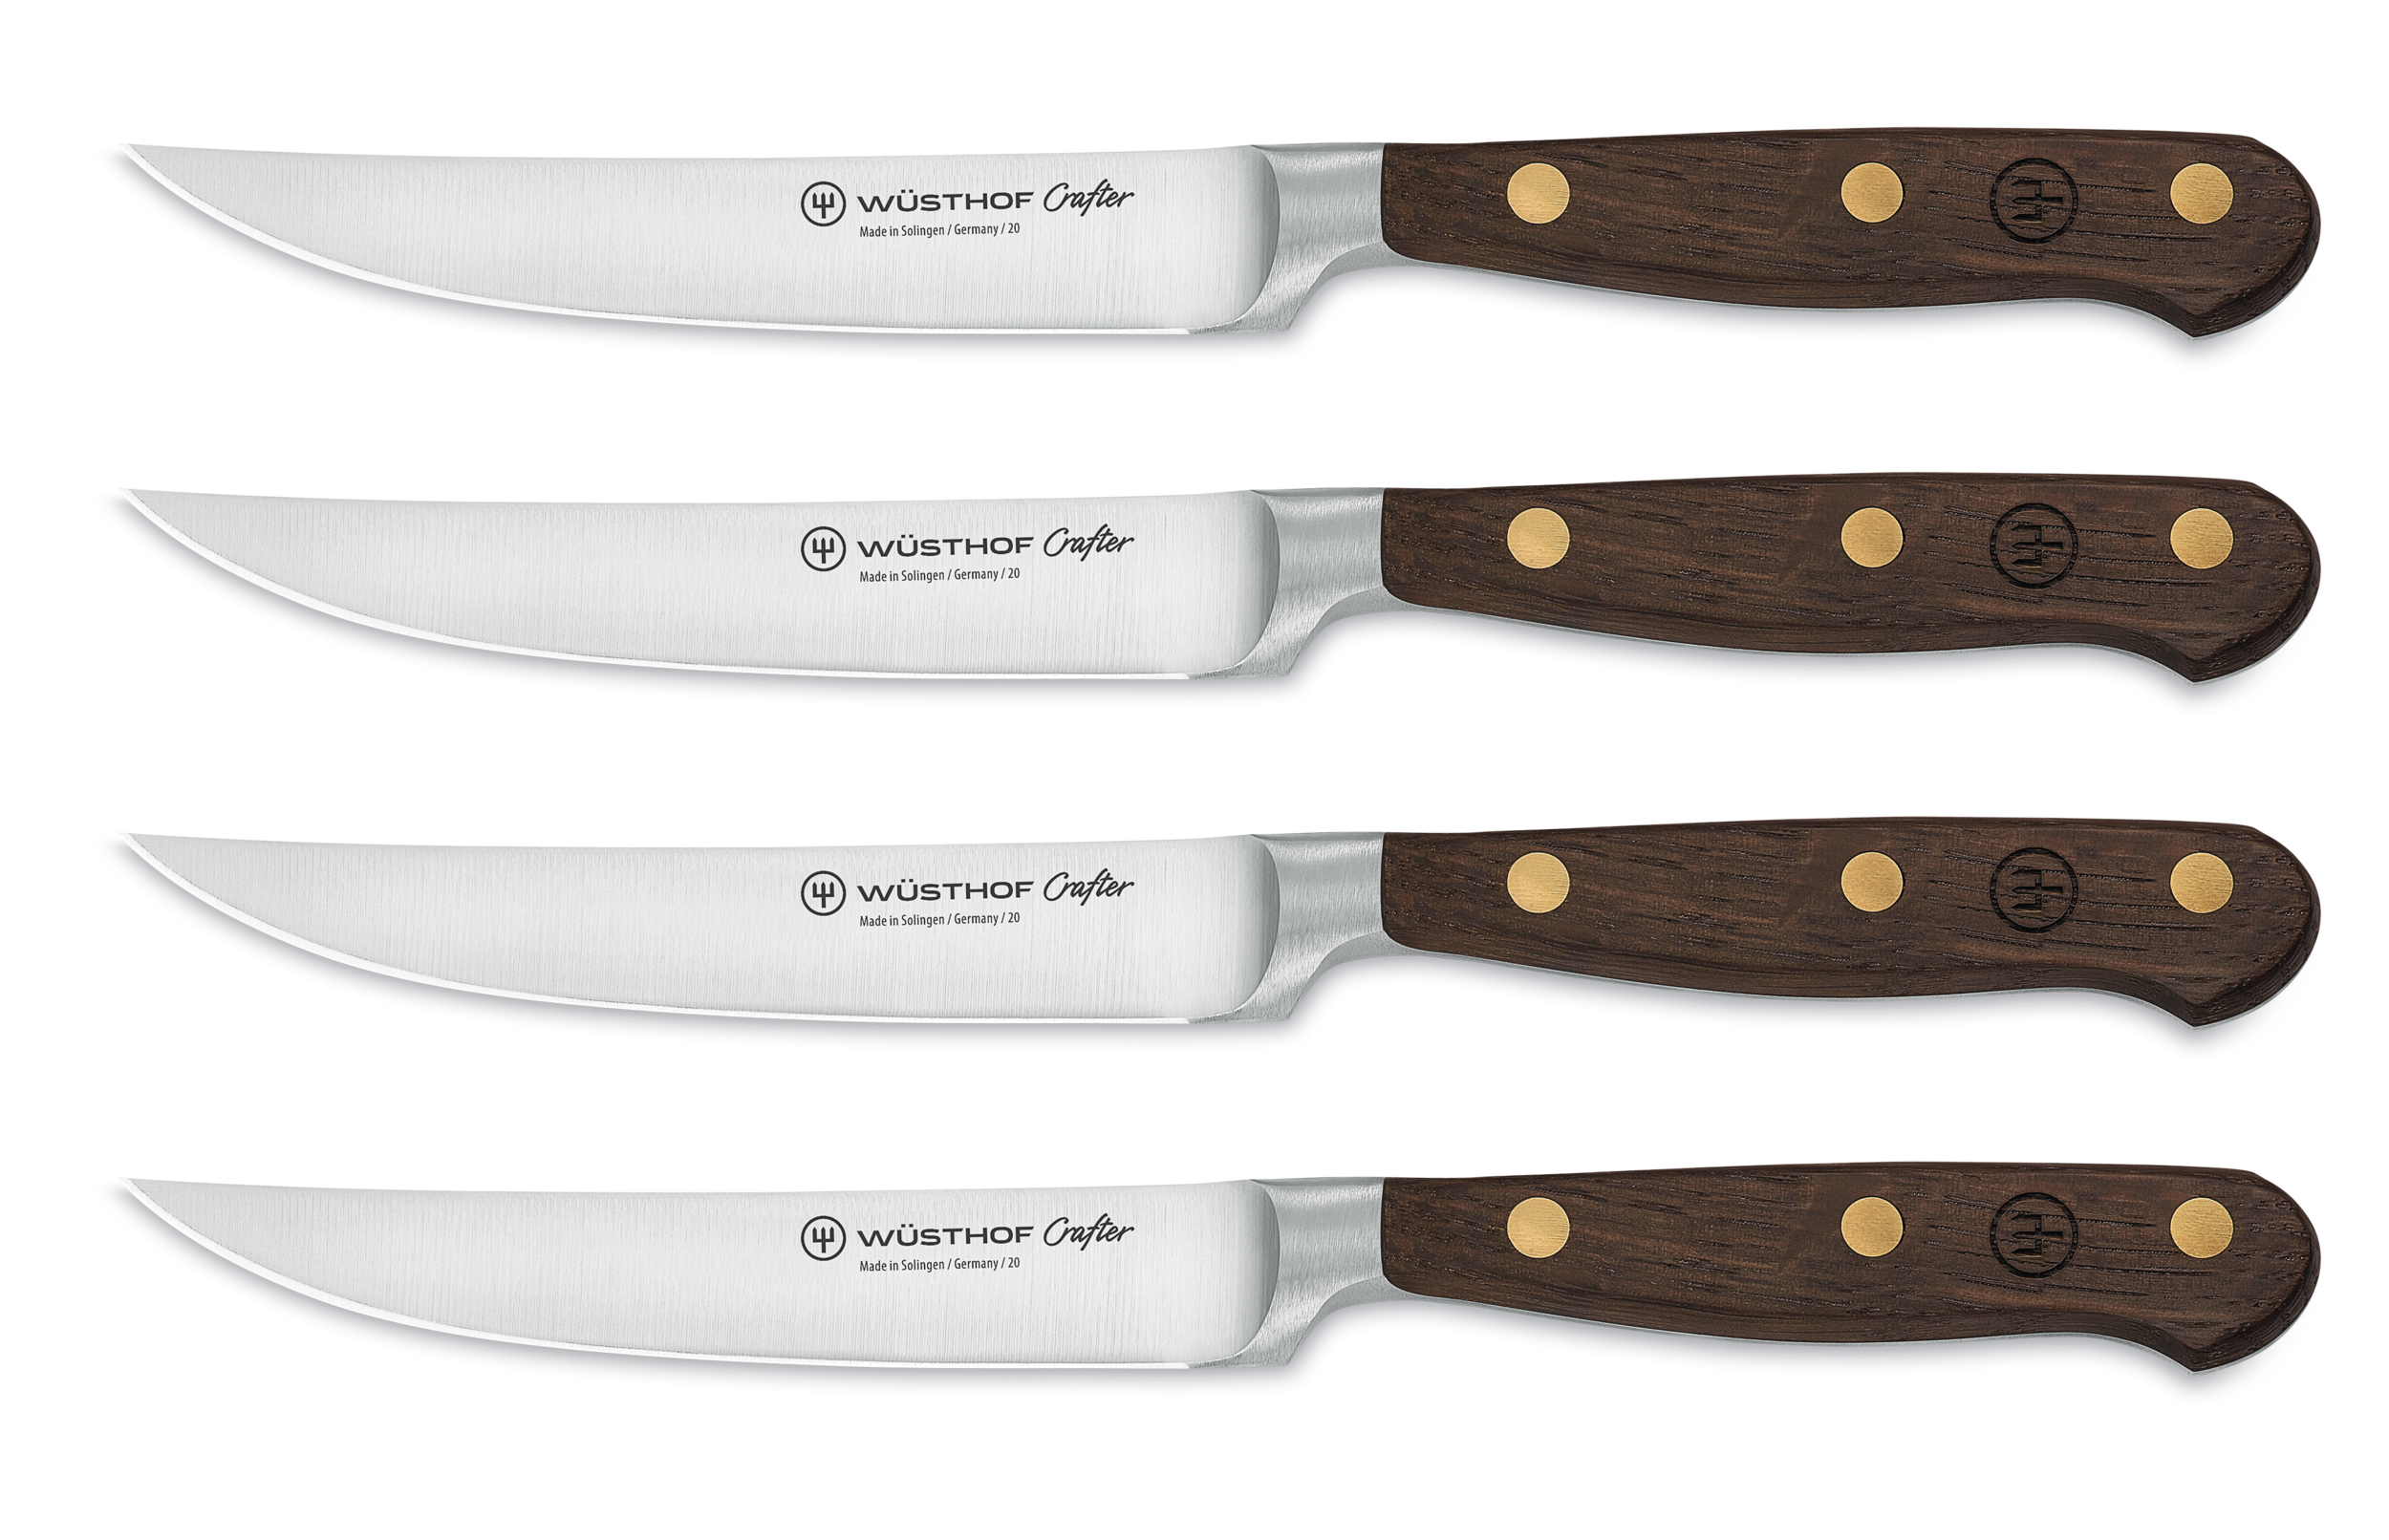 Steakmesser Set mit 4 Messern 9738 Das Crafter Steakmesser Set von Wüsthof 